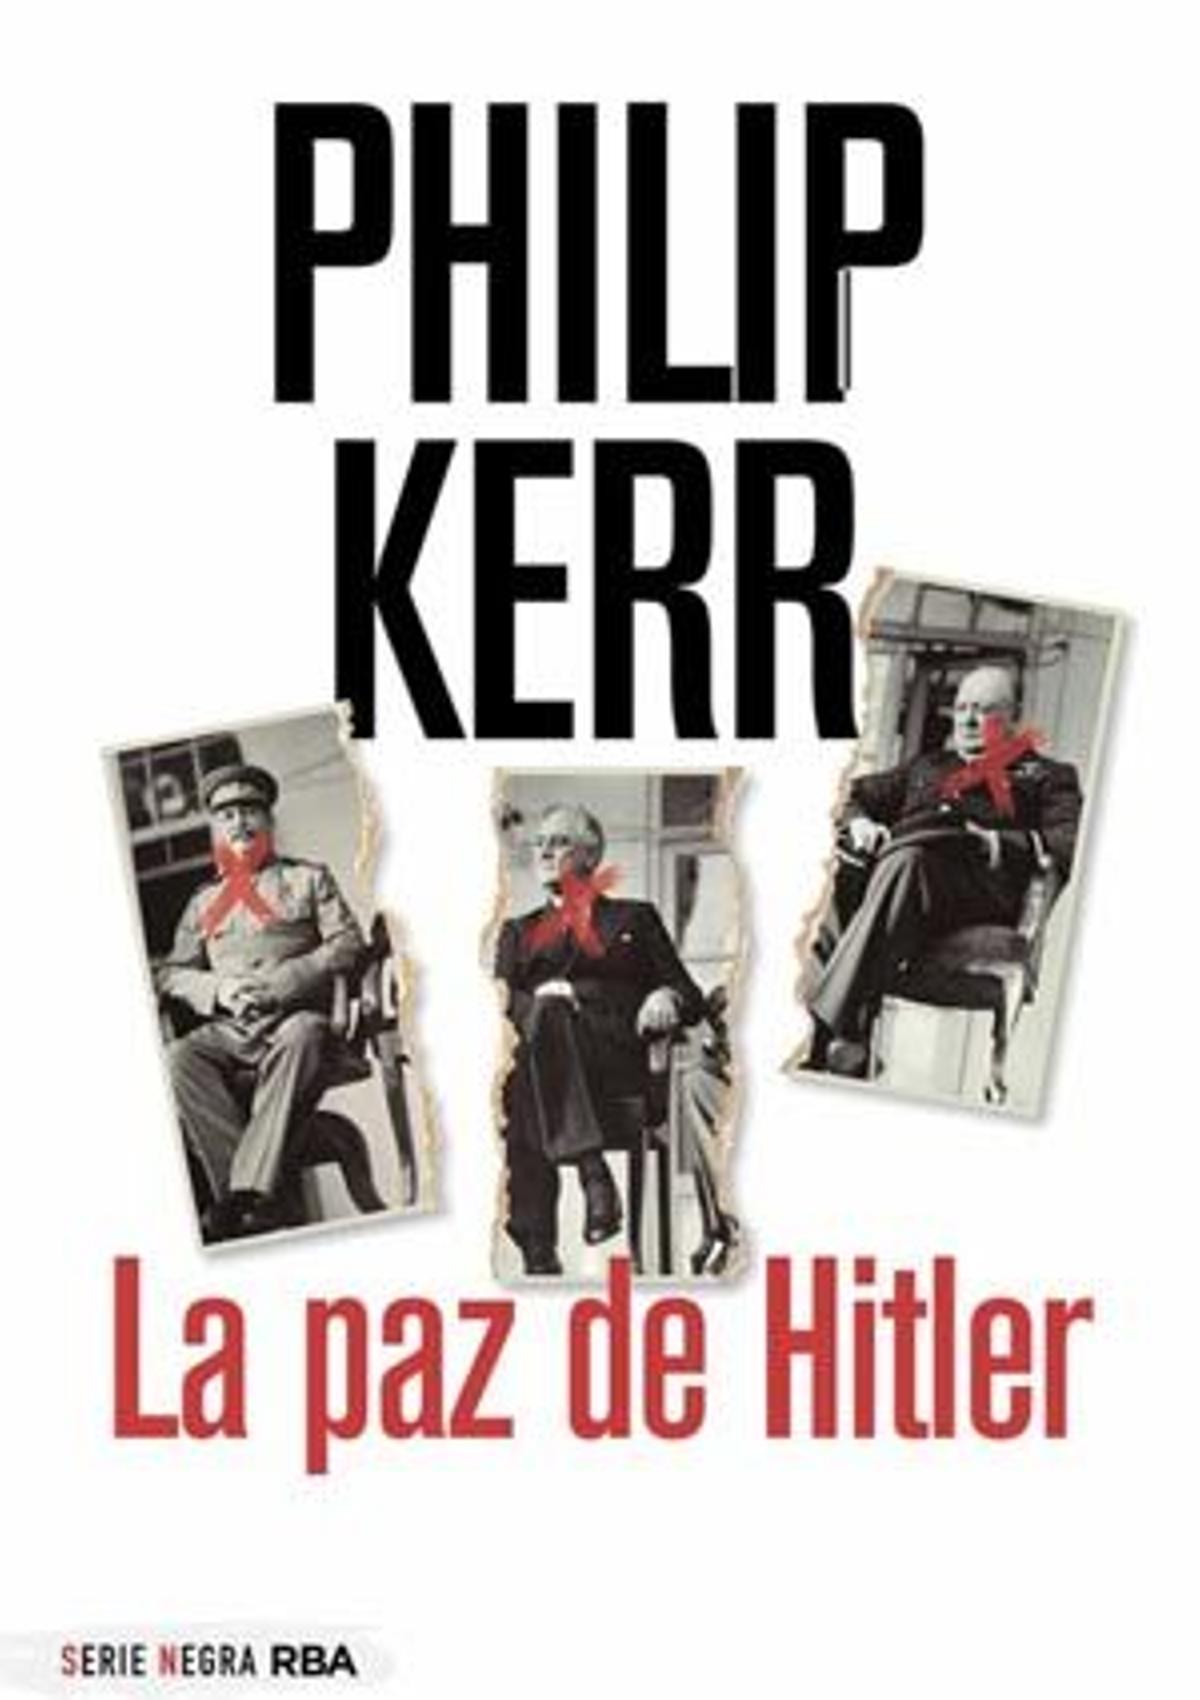 Philip Kerr (RBA.19 €).